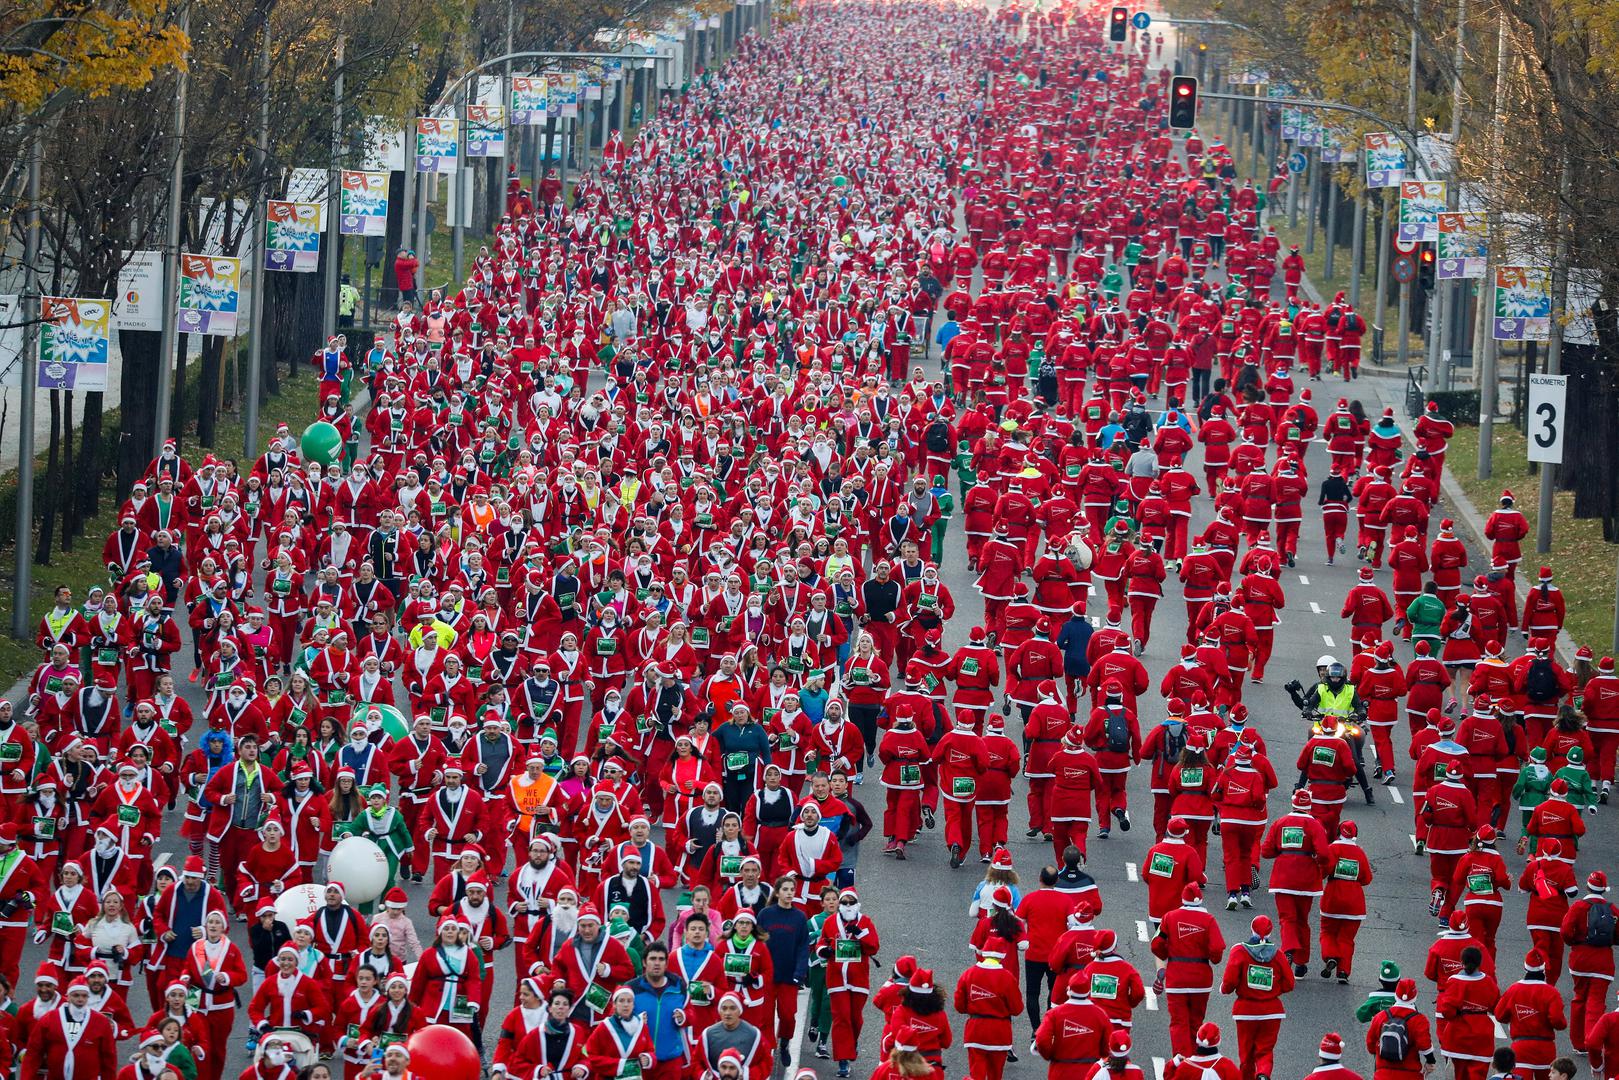 Organizatori su rekli da je utrka Djedova Božićnjaka najveća takve vrste u svijetu.